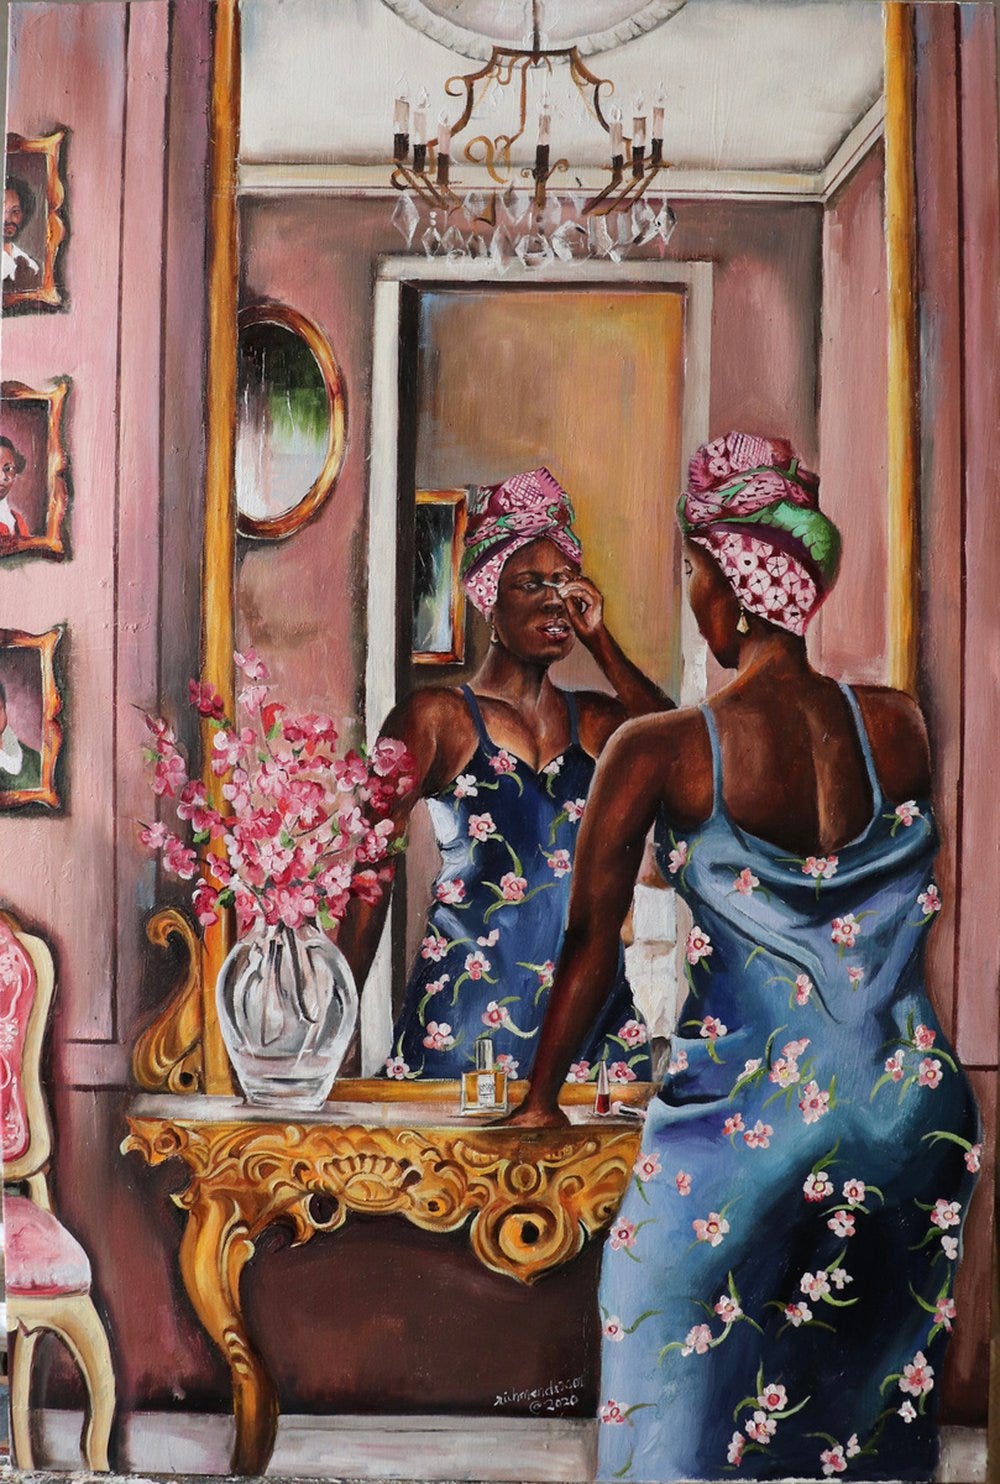 Richard Mensah - Paintings for Sale | Artfinder